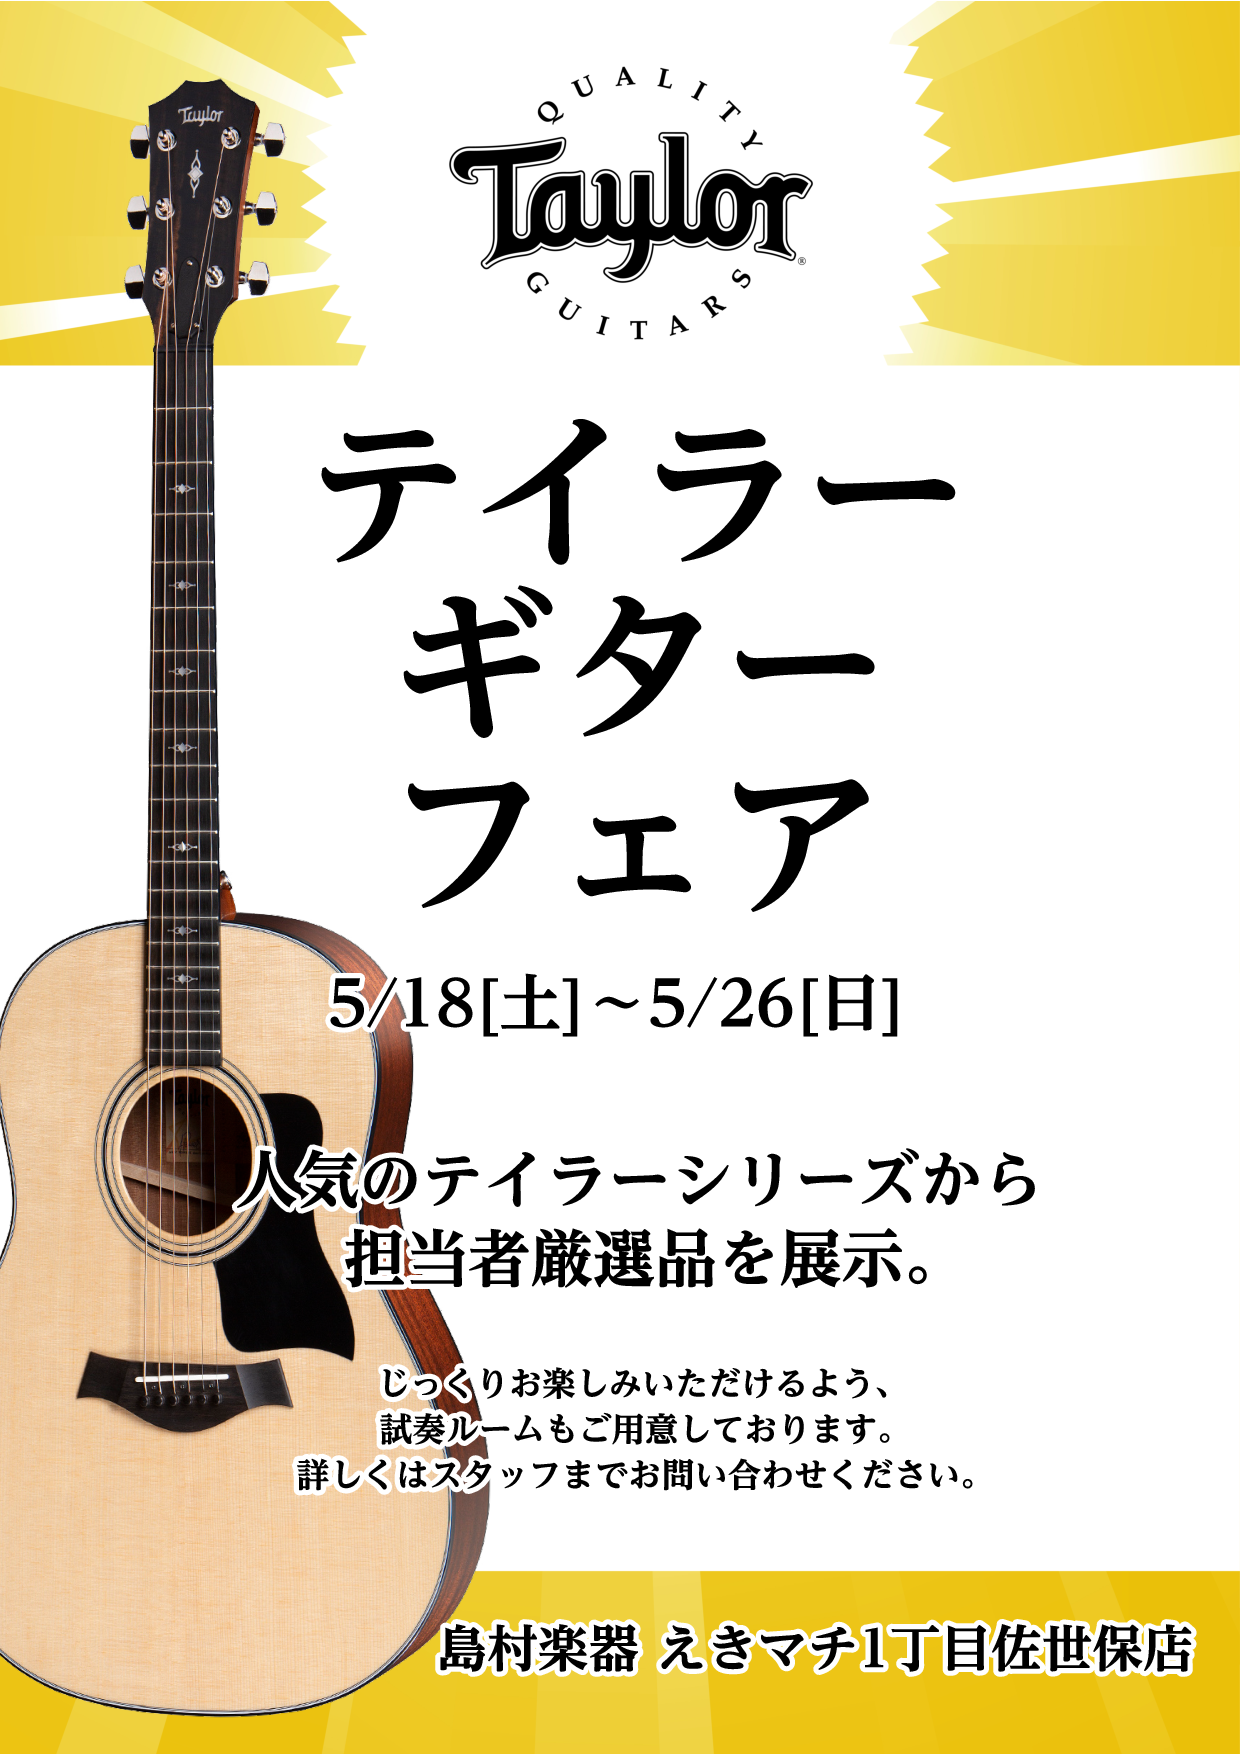 【アコースティックギター】Taylorギターフェアを開催します！